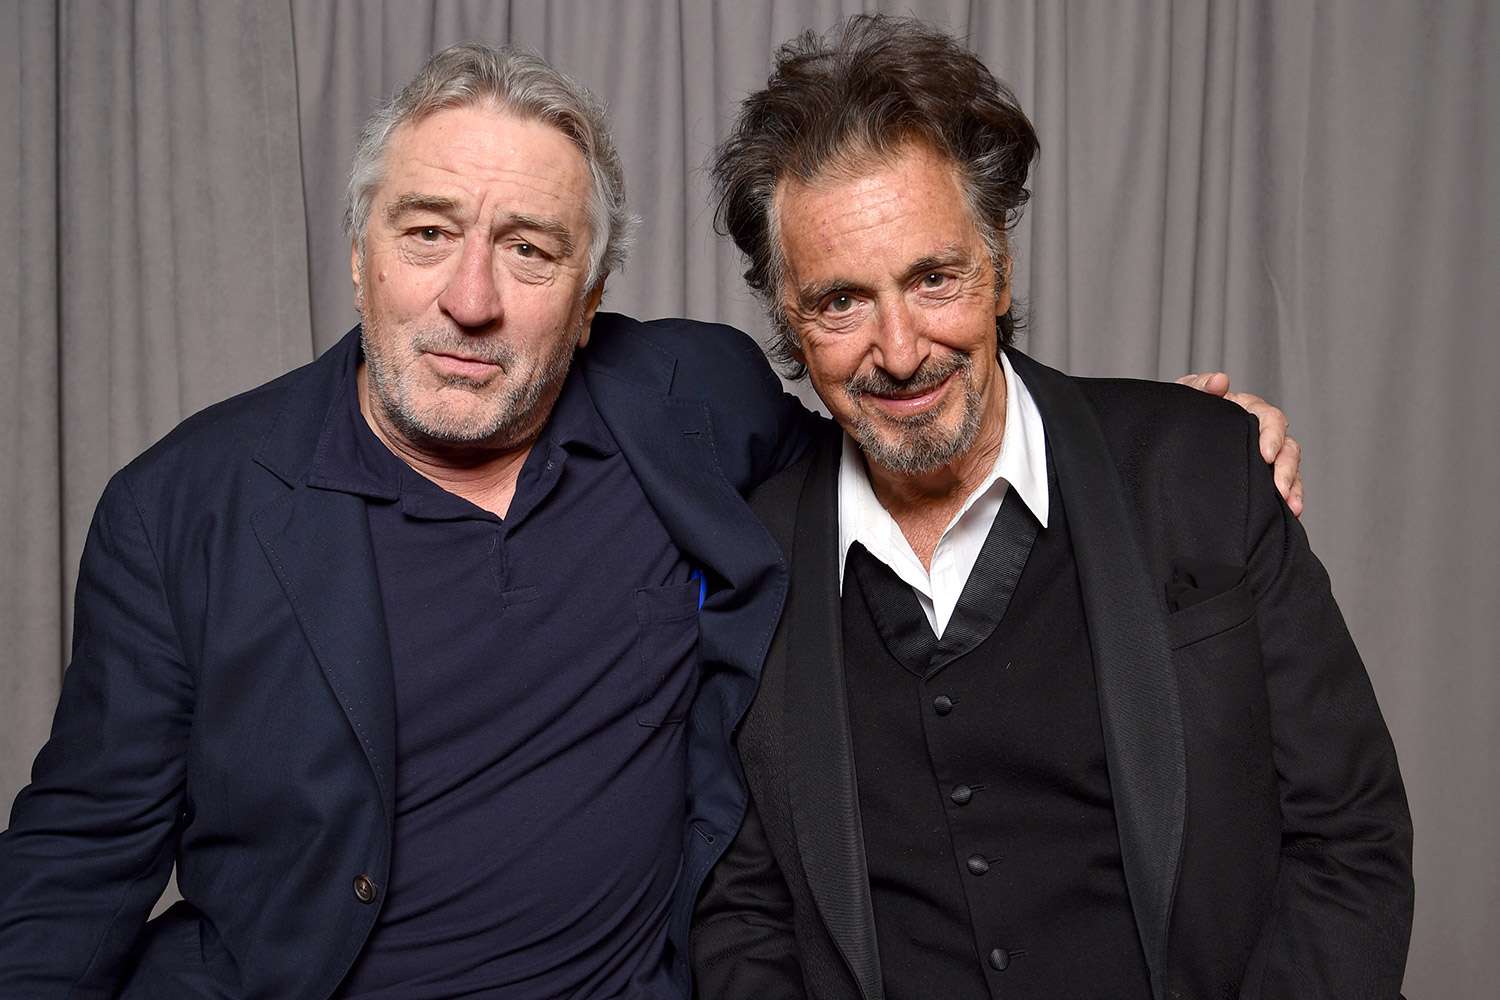 Robert DeNiro and Al Pacino